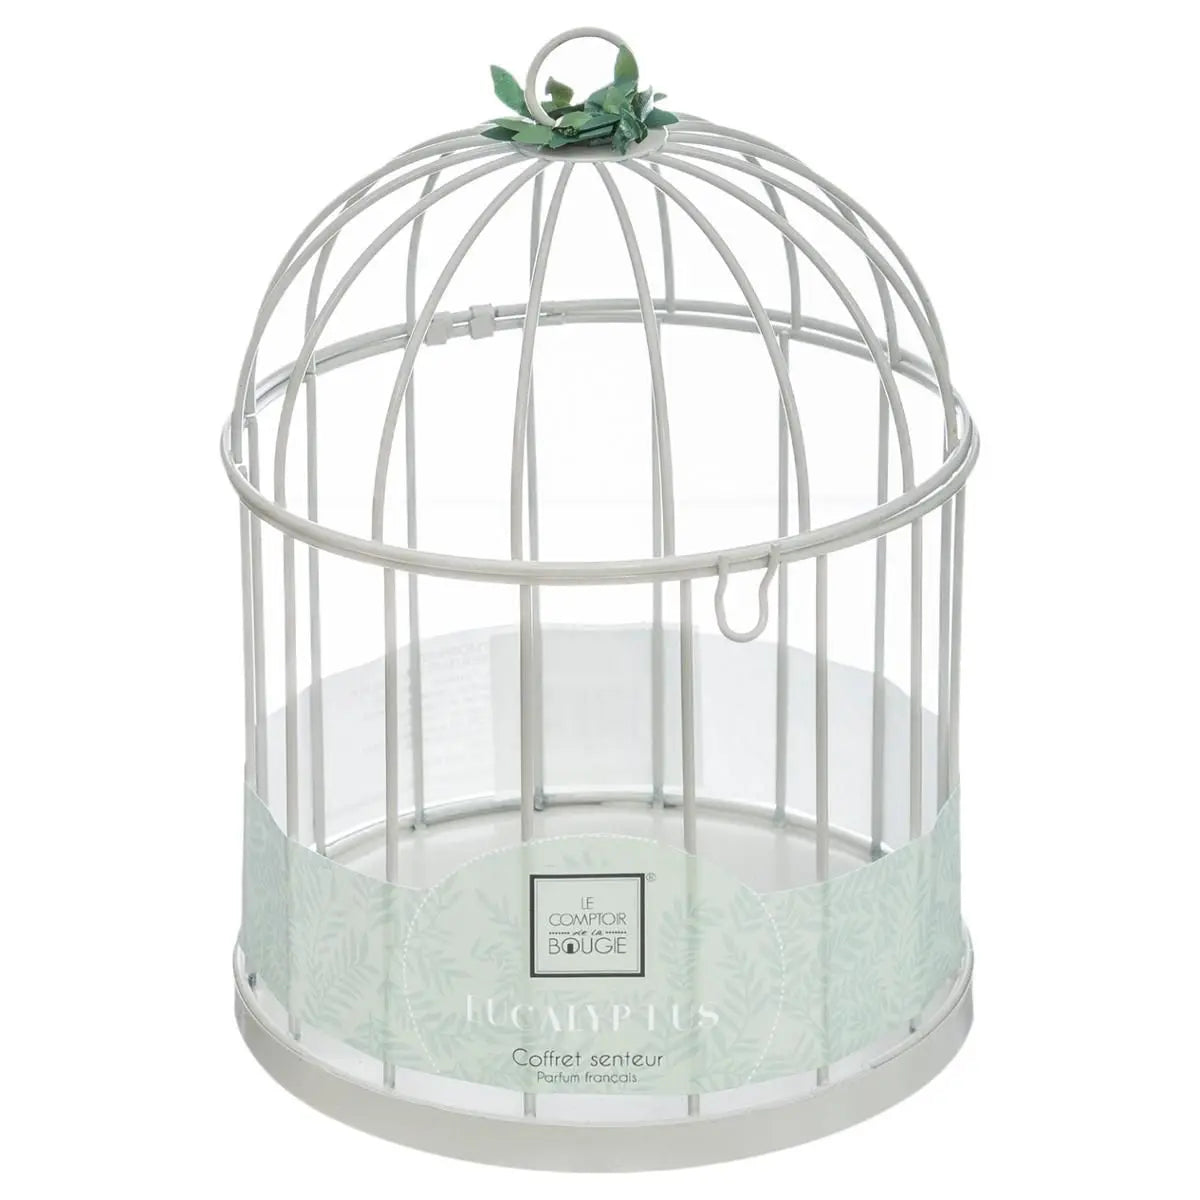 Cage Fragrance Set | HOG-Home. Office. Garden online marketplace